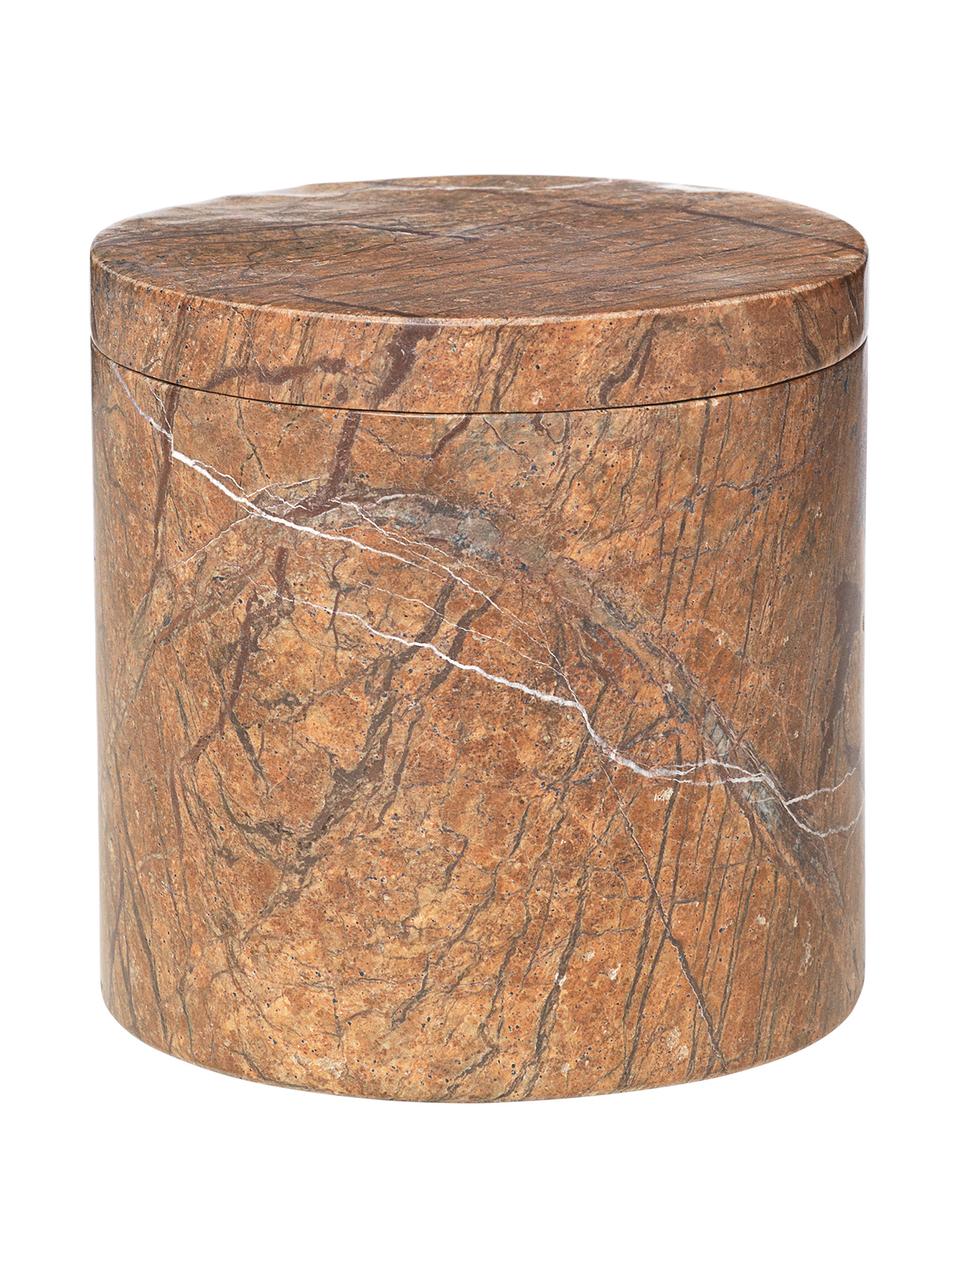 Marmor-Aufbewahrungsdose Osvald in Braun, Marmor

Marmor ist ein Naturgestein und ist daher in seiner Maserung einzigartig. Jedes Produkt ist ein Unikat, Brauner Marmor, Ø 10 x H 10 cm